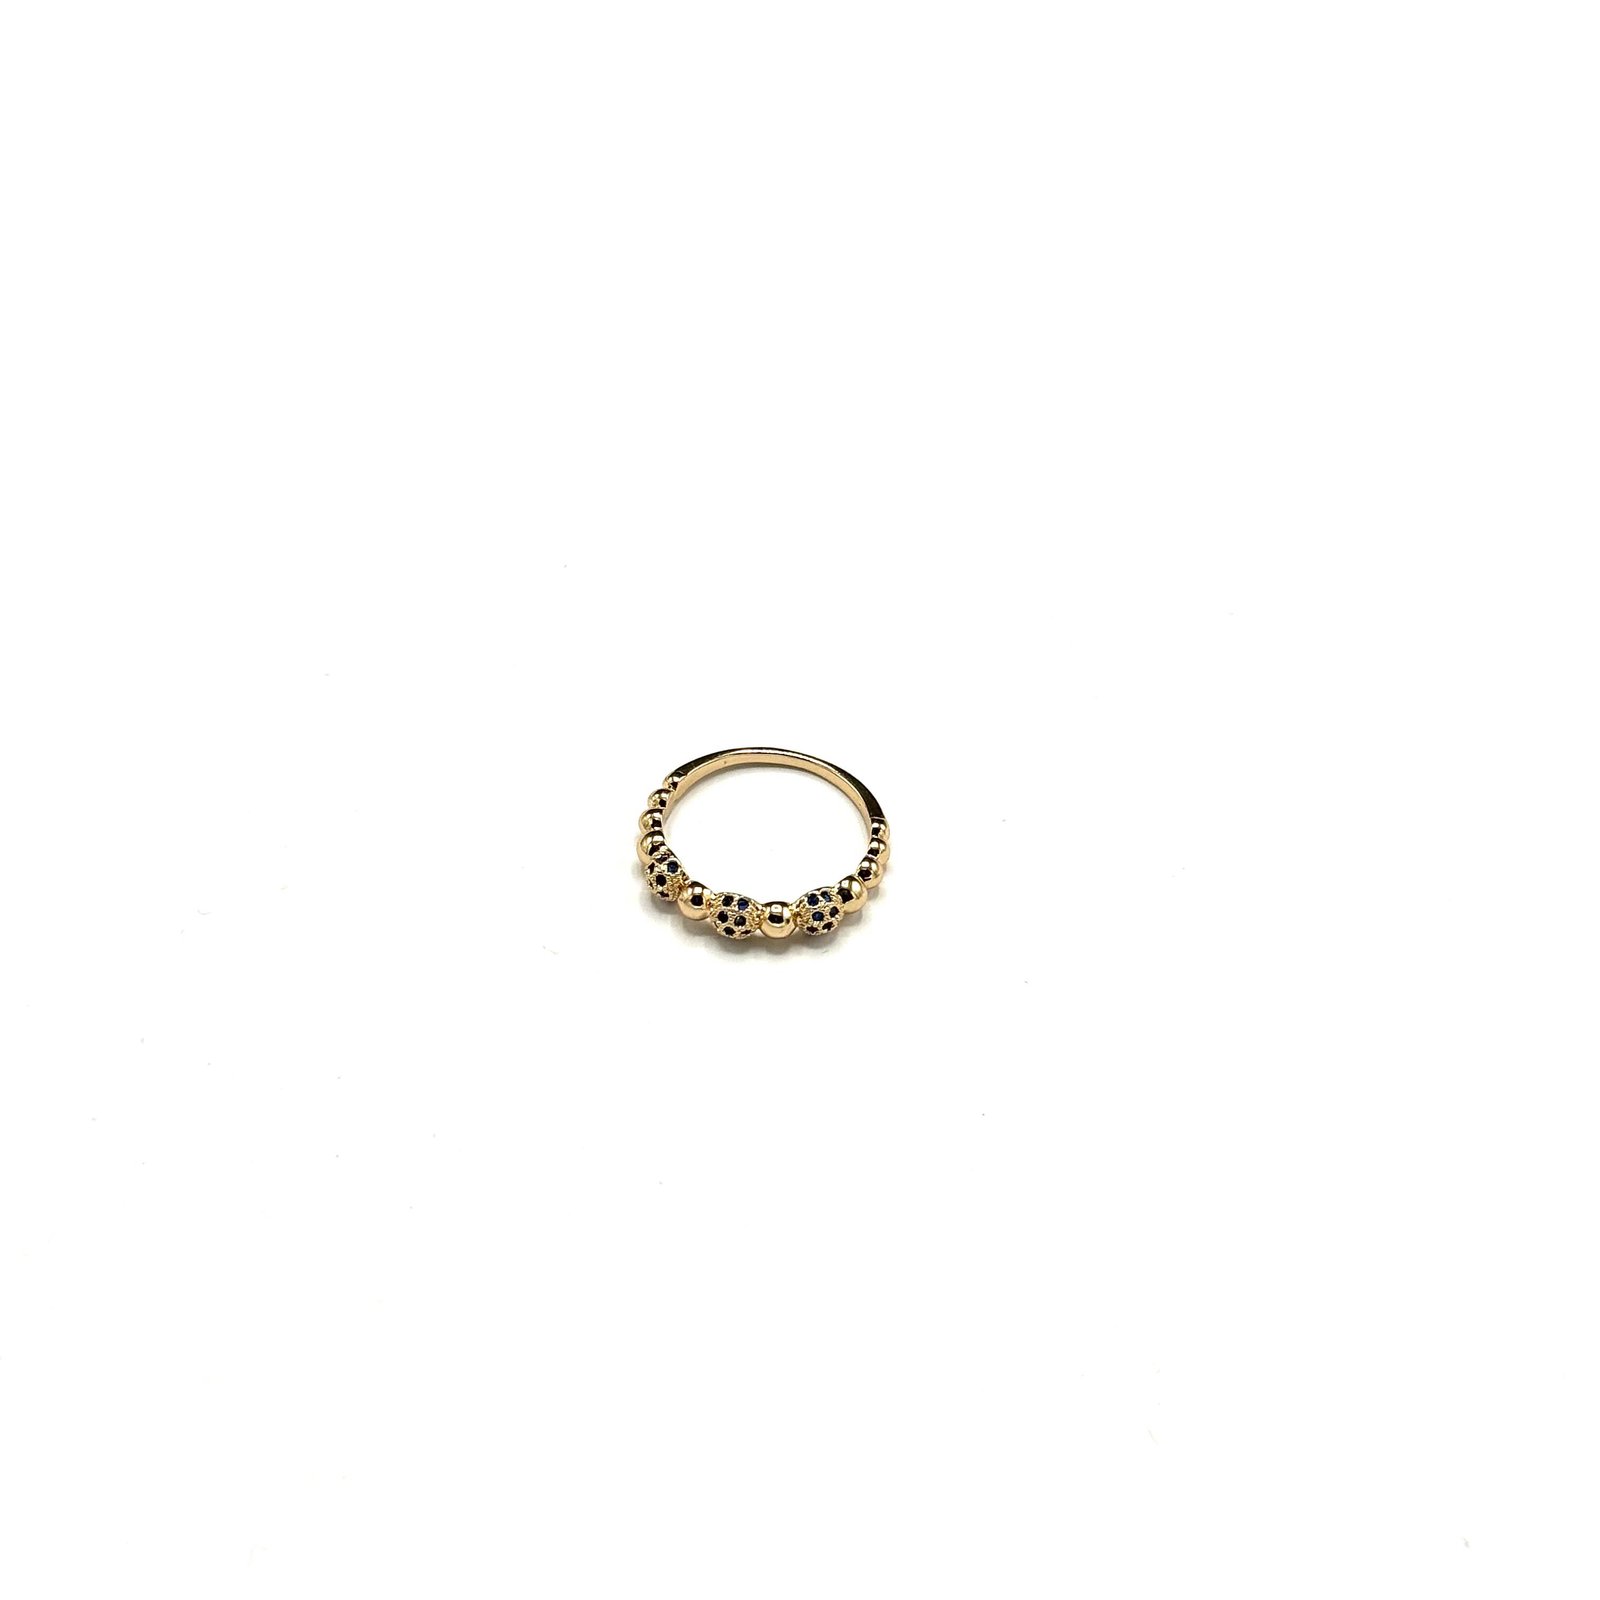 Premium Quality Gold Plated Rings ART-FAJ-5102